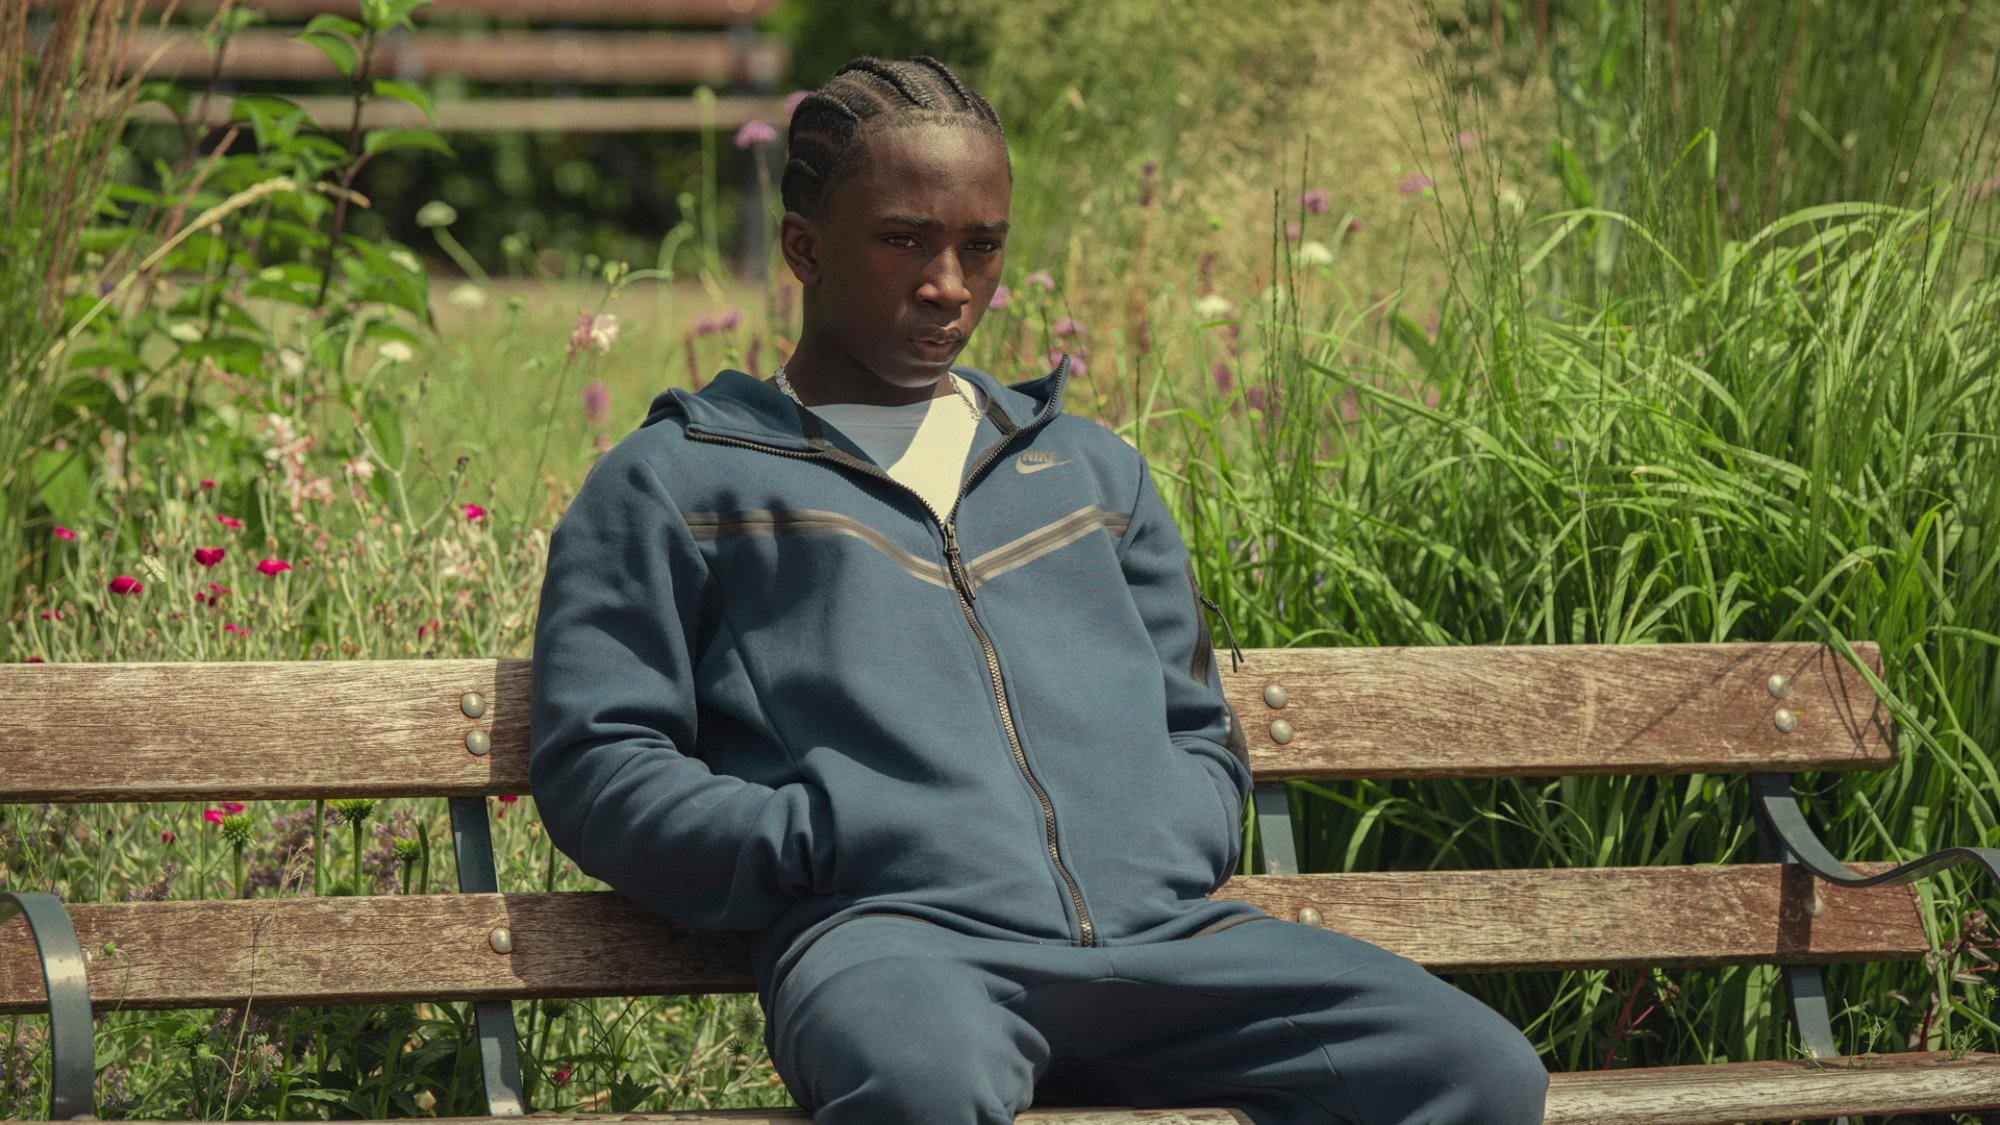 Araloyin Oshunremi dans le rôle de Stef, assis sur un banc de parc, l